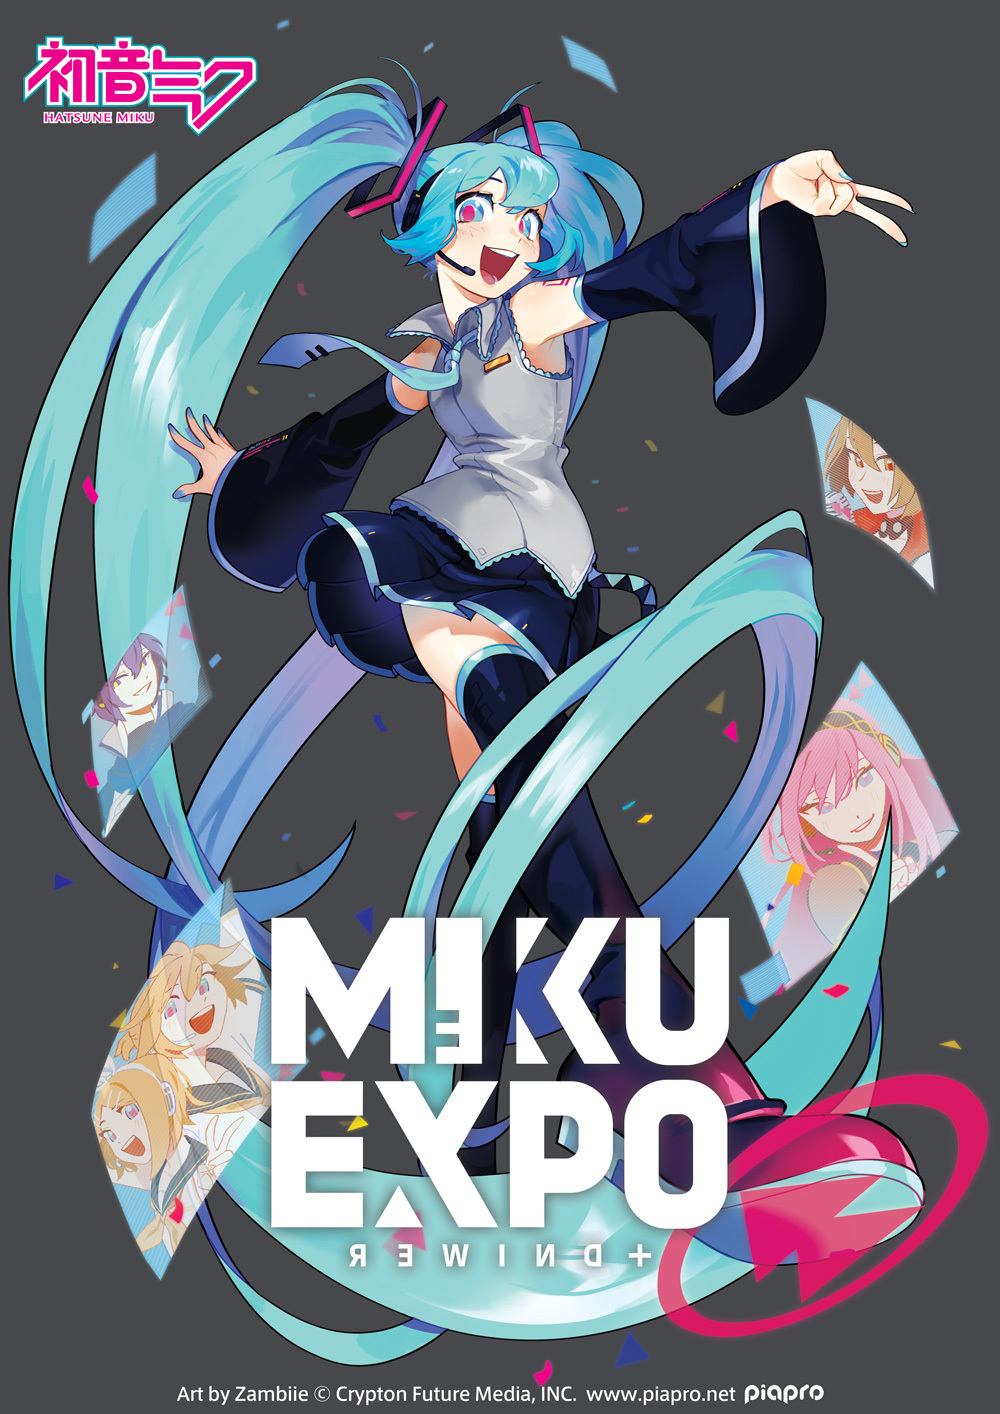 初音ミク 公式 Miku Expo Rewind 初音ミクの世界ツアーmiku Expoの軌跡を振り返る Miku Expo Rewind が パワーアップして再始動 日付 22年11月6日 日 Mikuexporewind プラットフォーム Twitch Youtube Live Webサイト T Co